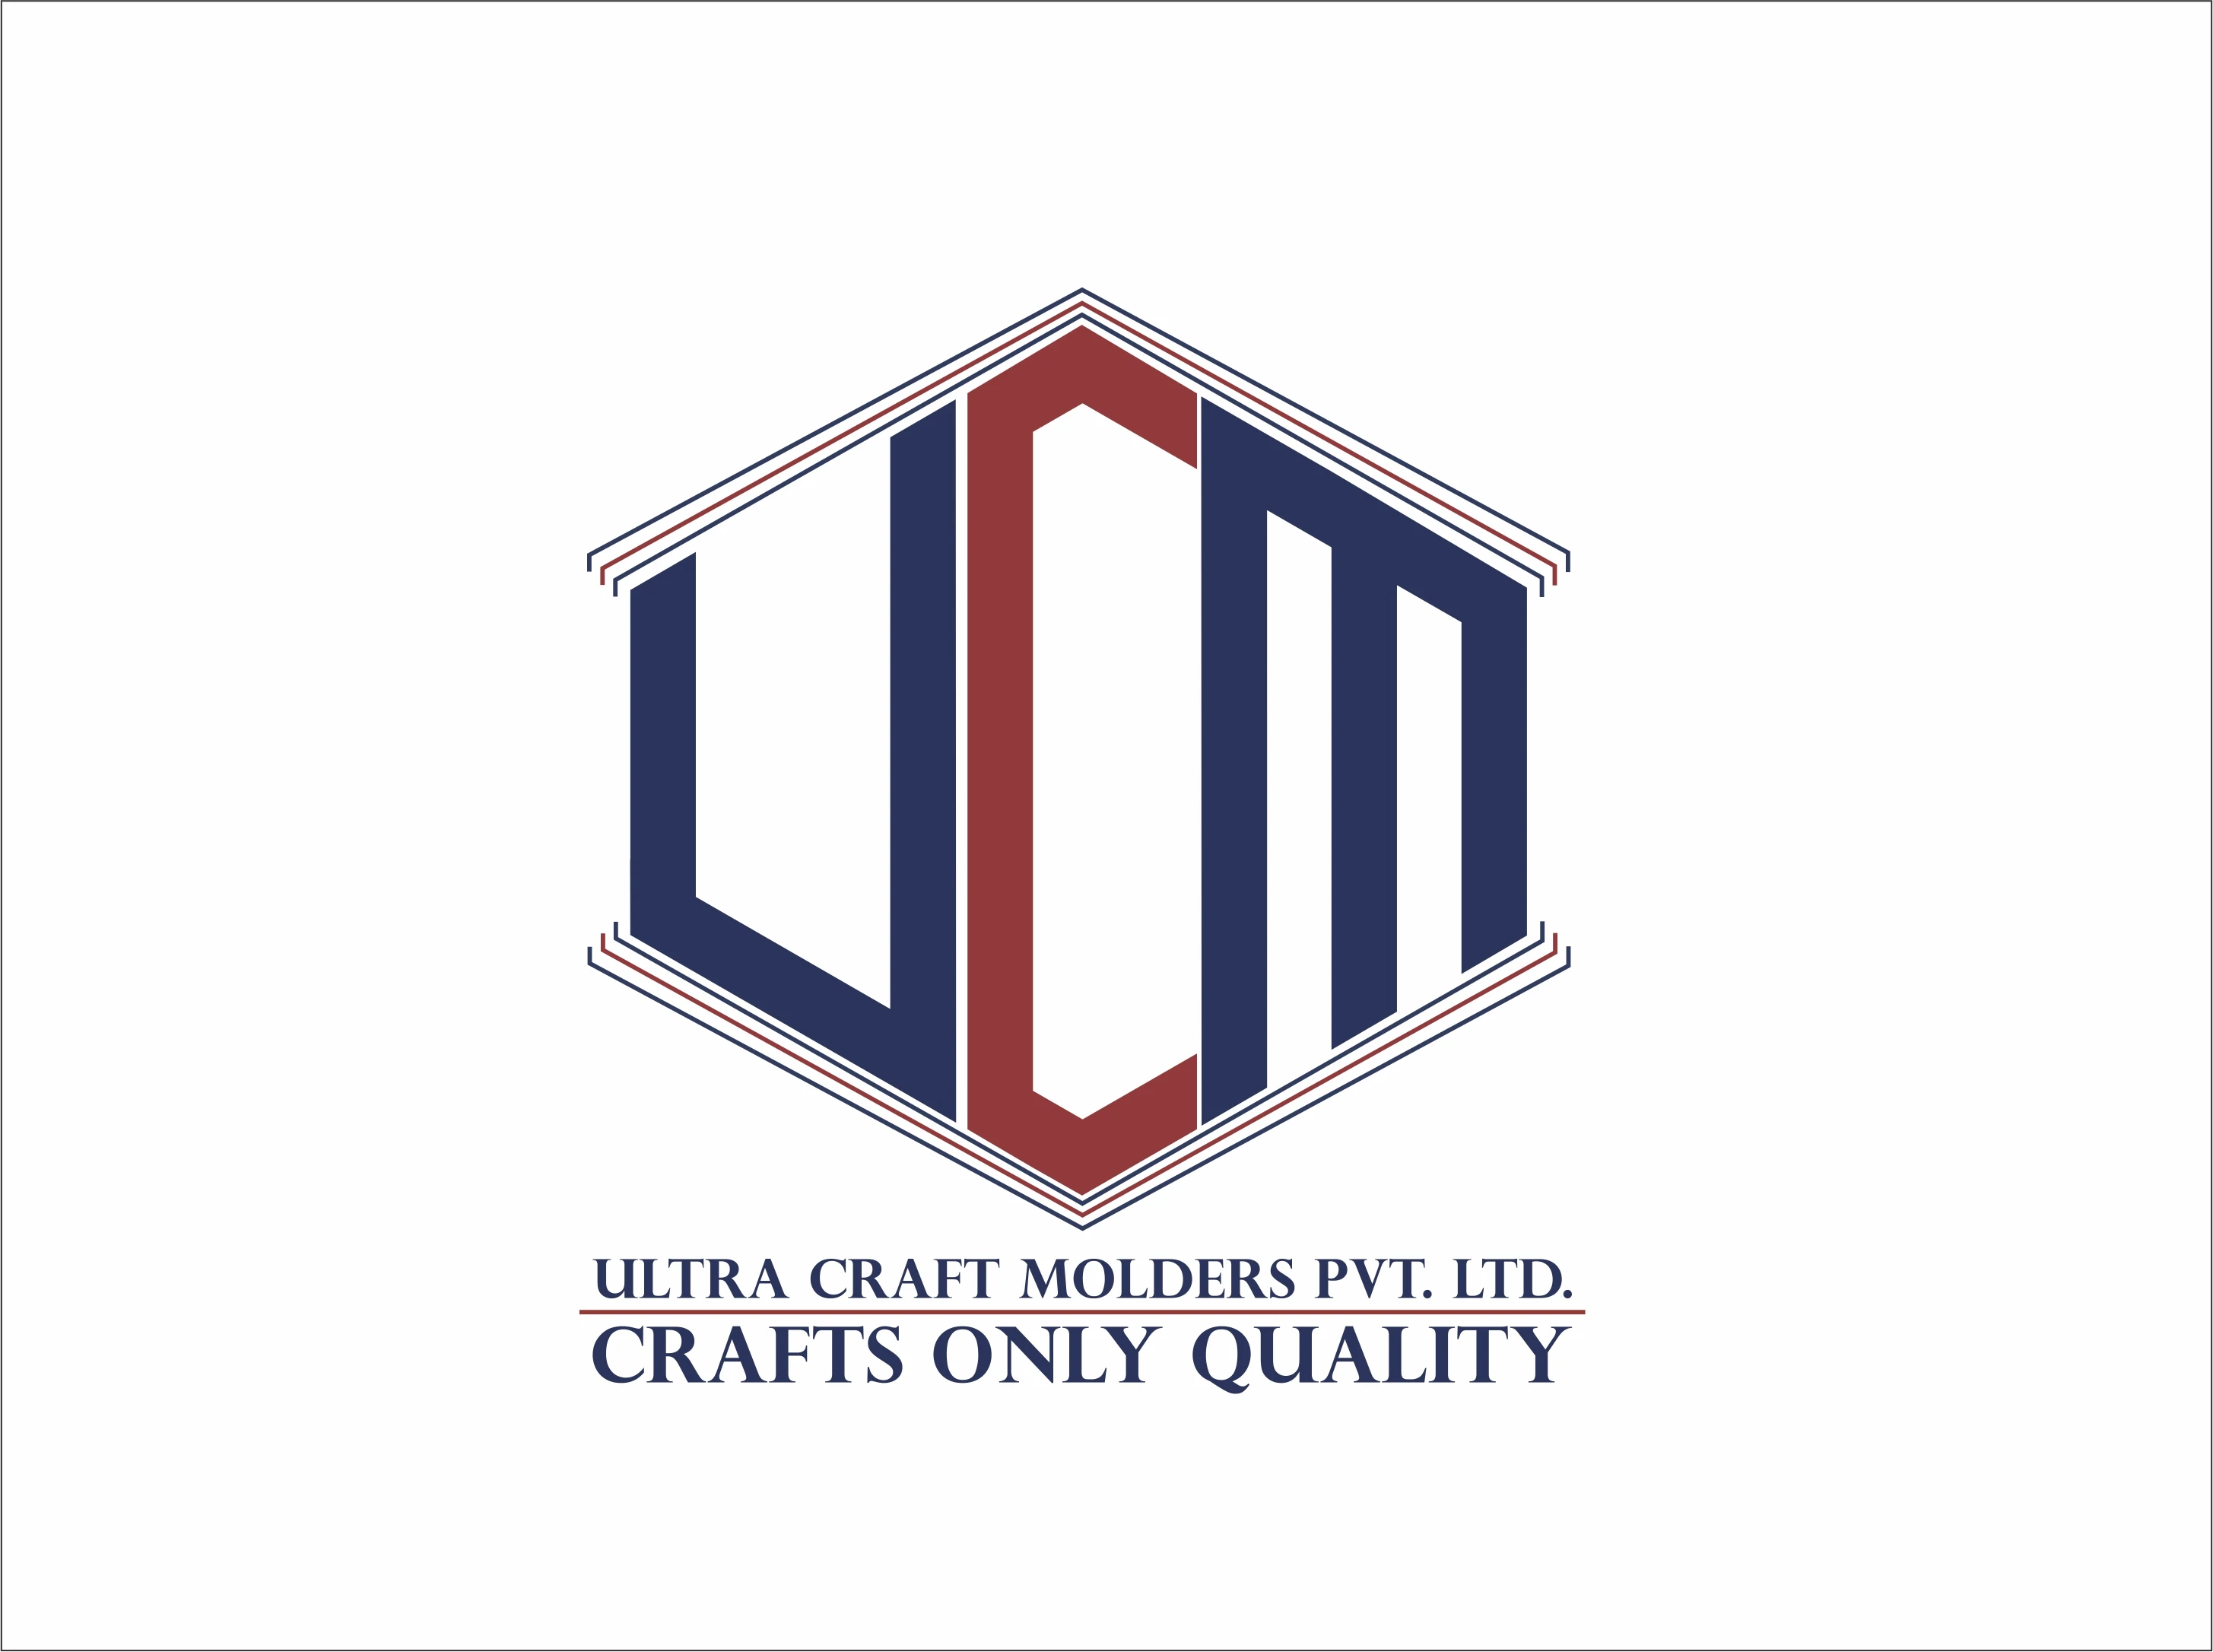 Only quality. Логотип Ультракрафт.